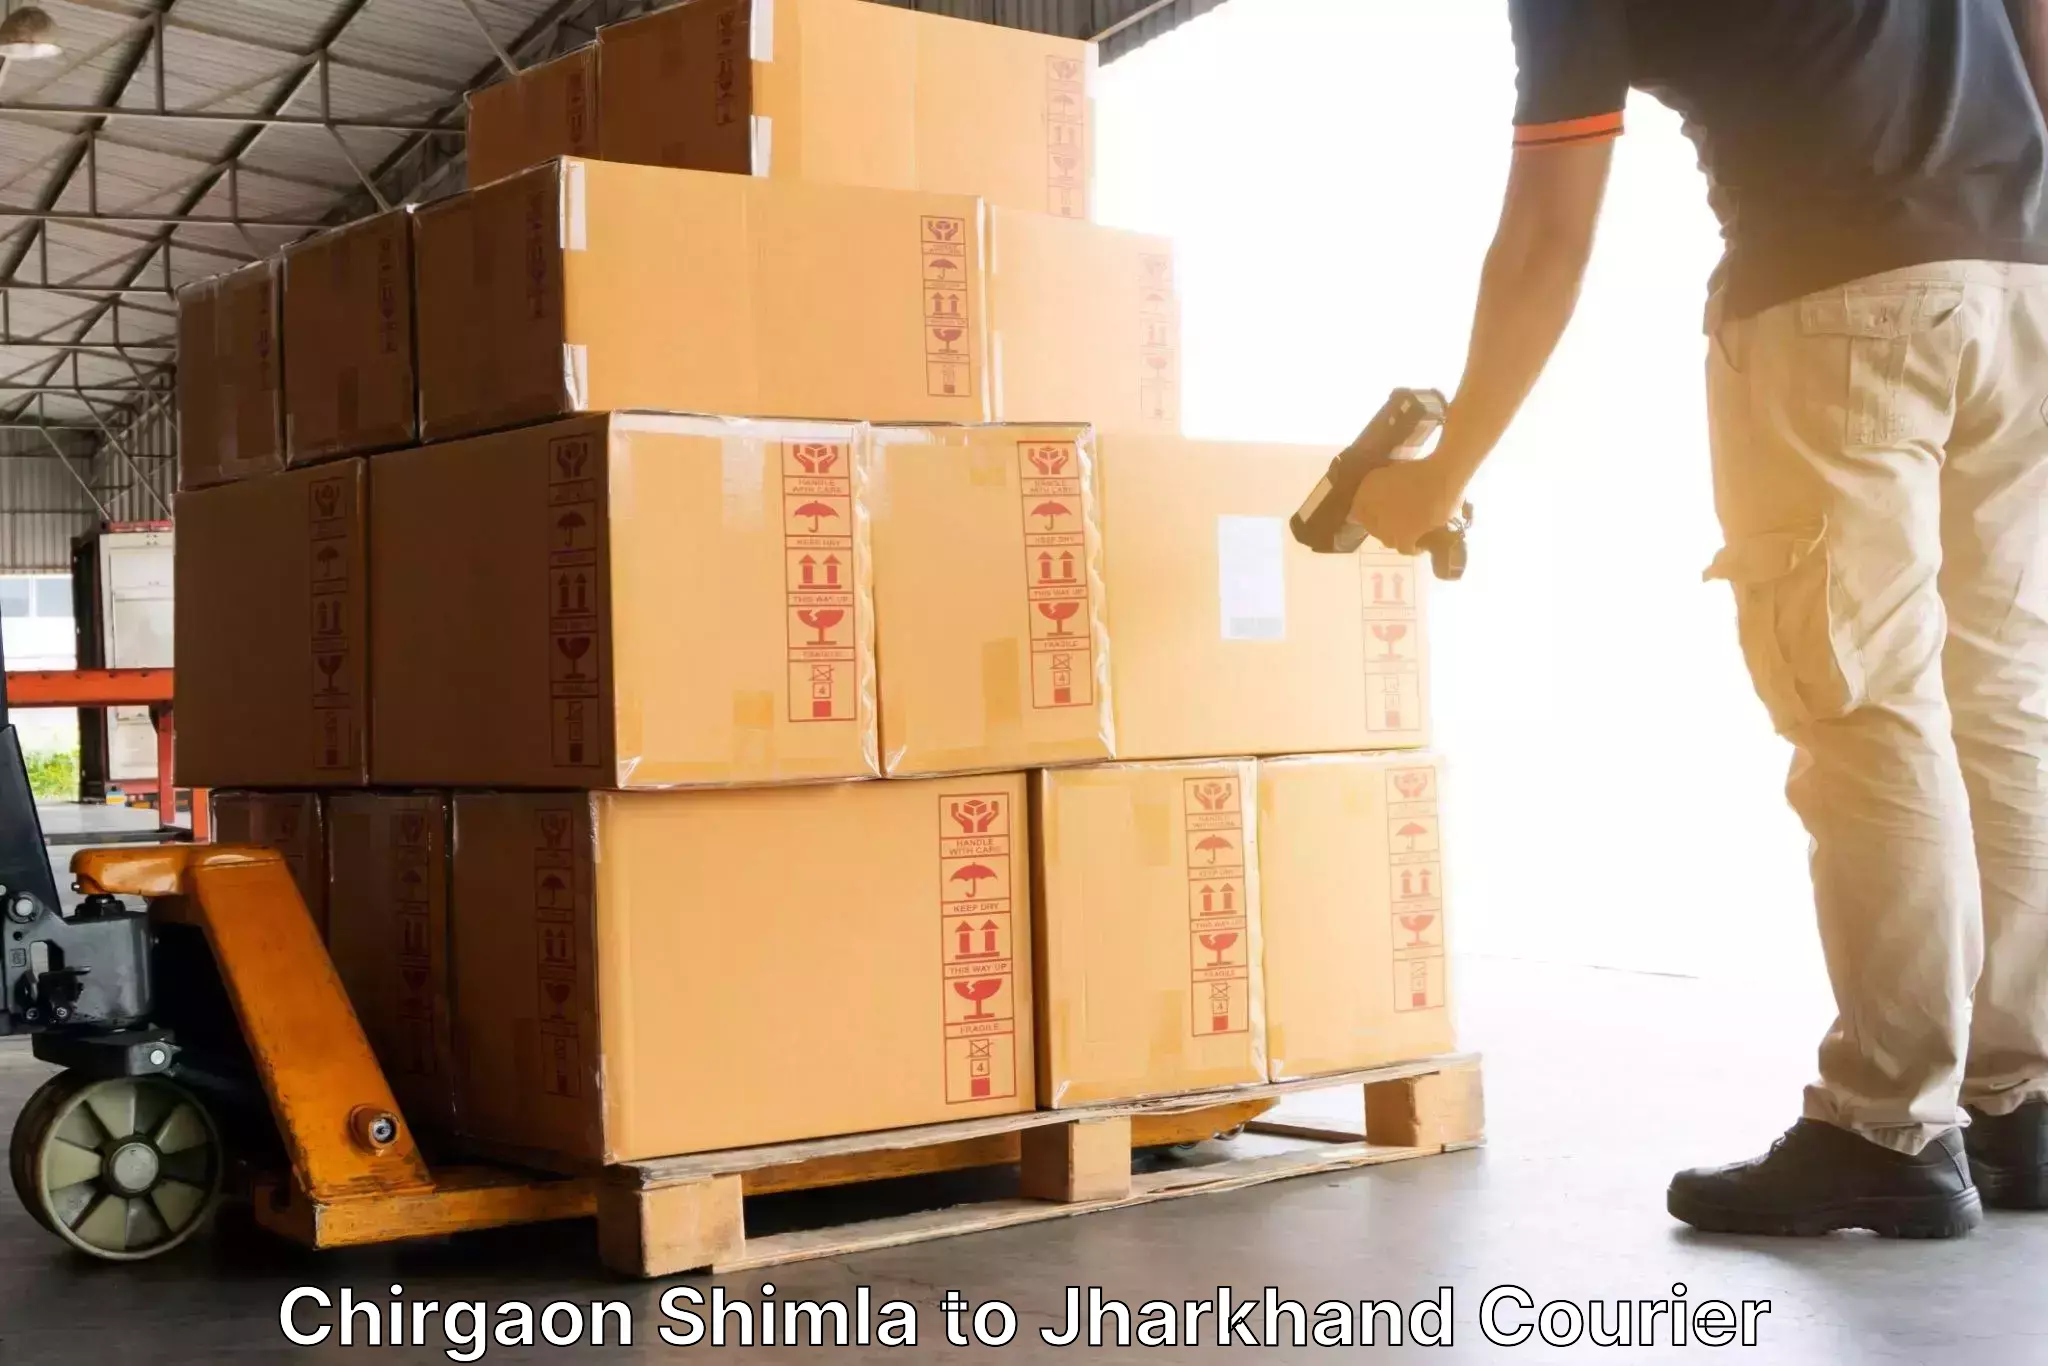 Express delivery capabilities Chirgaon Shimla to Daltonganj